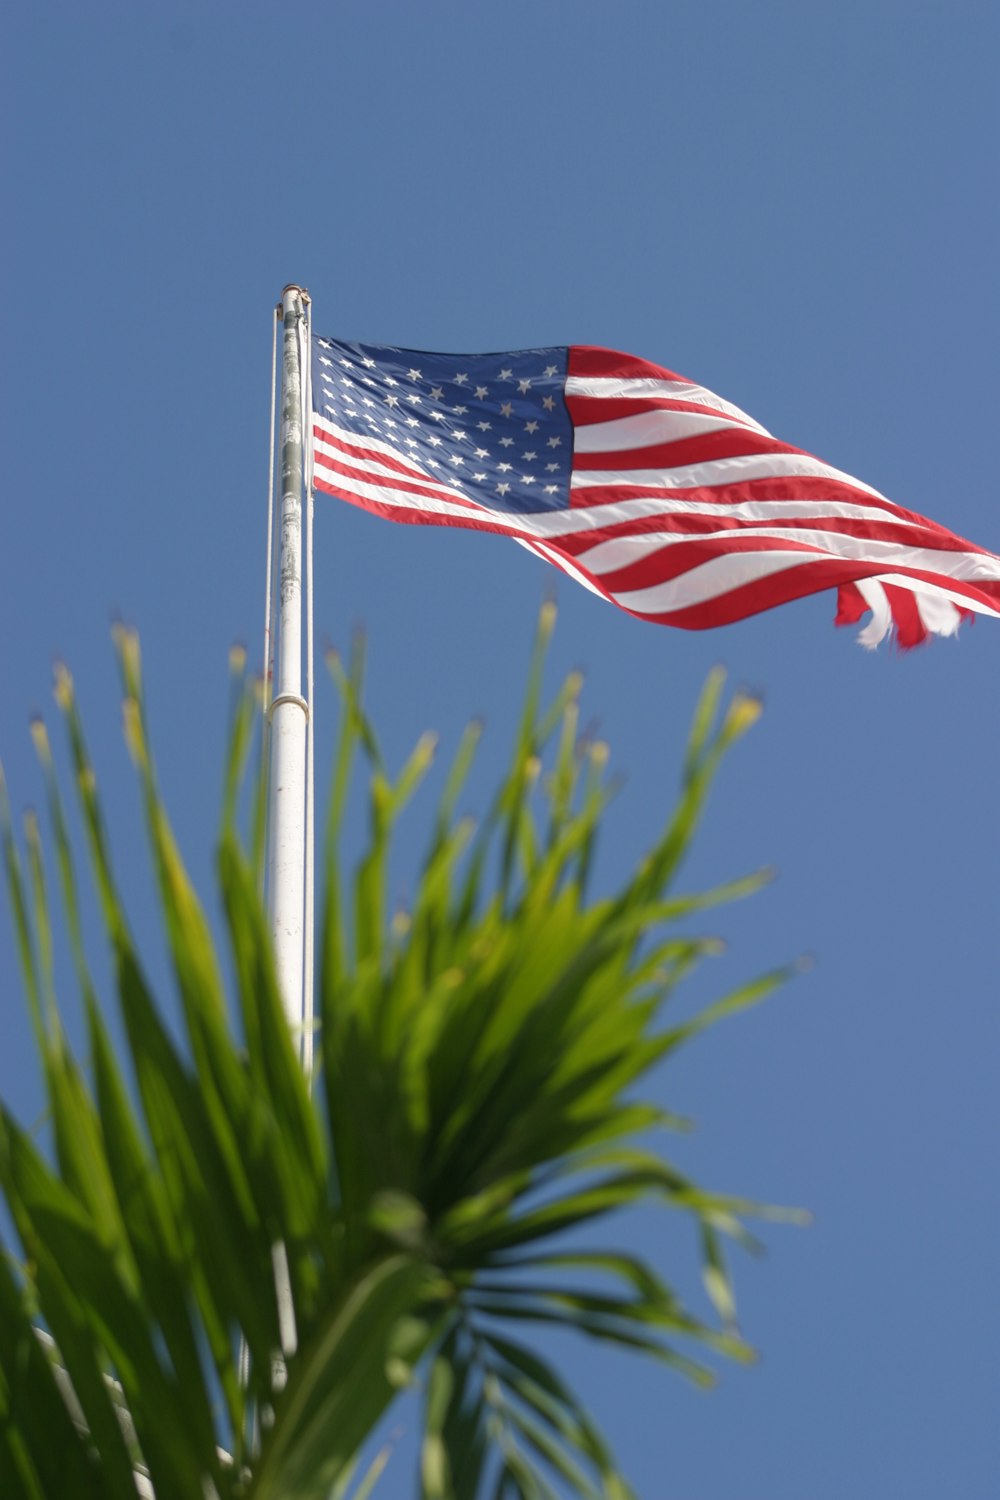 Eine amerikanische Flagge weht im Wind neben einer Palme